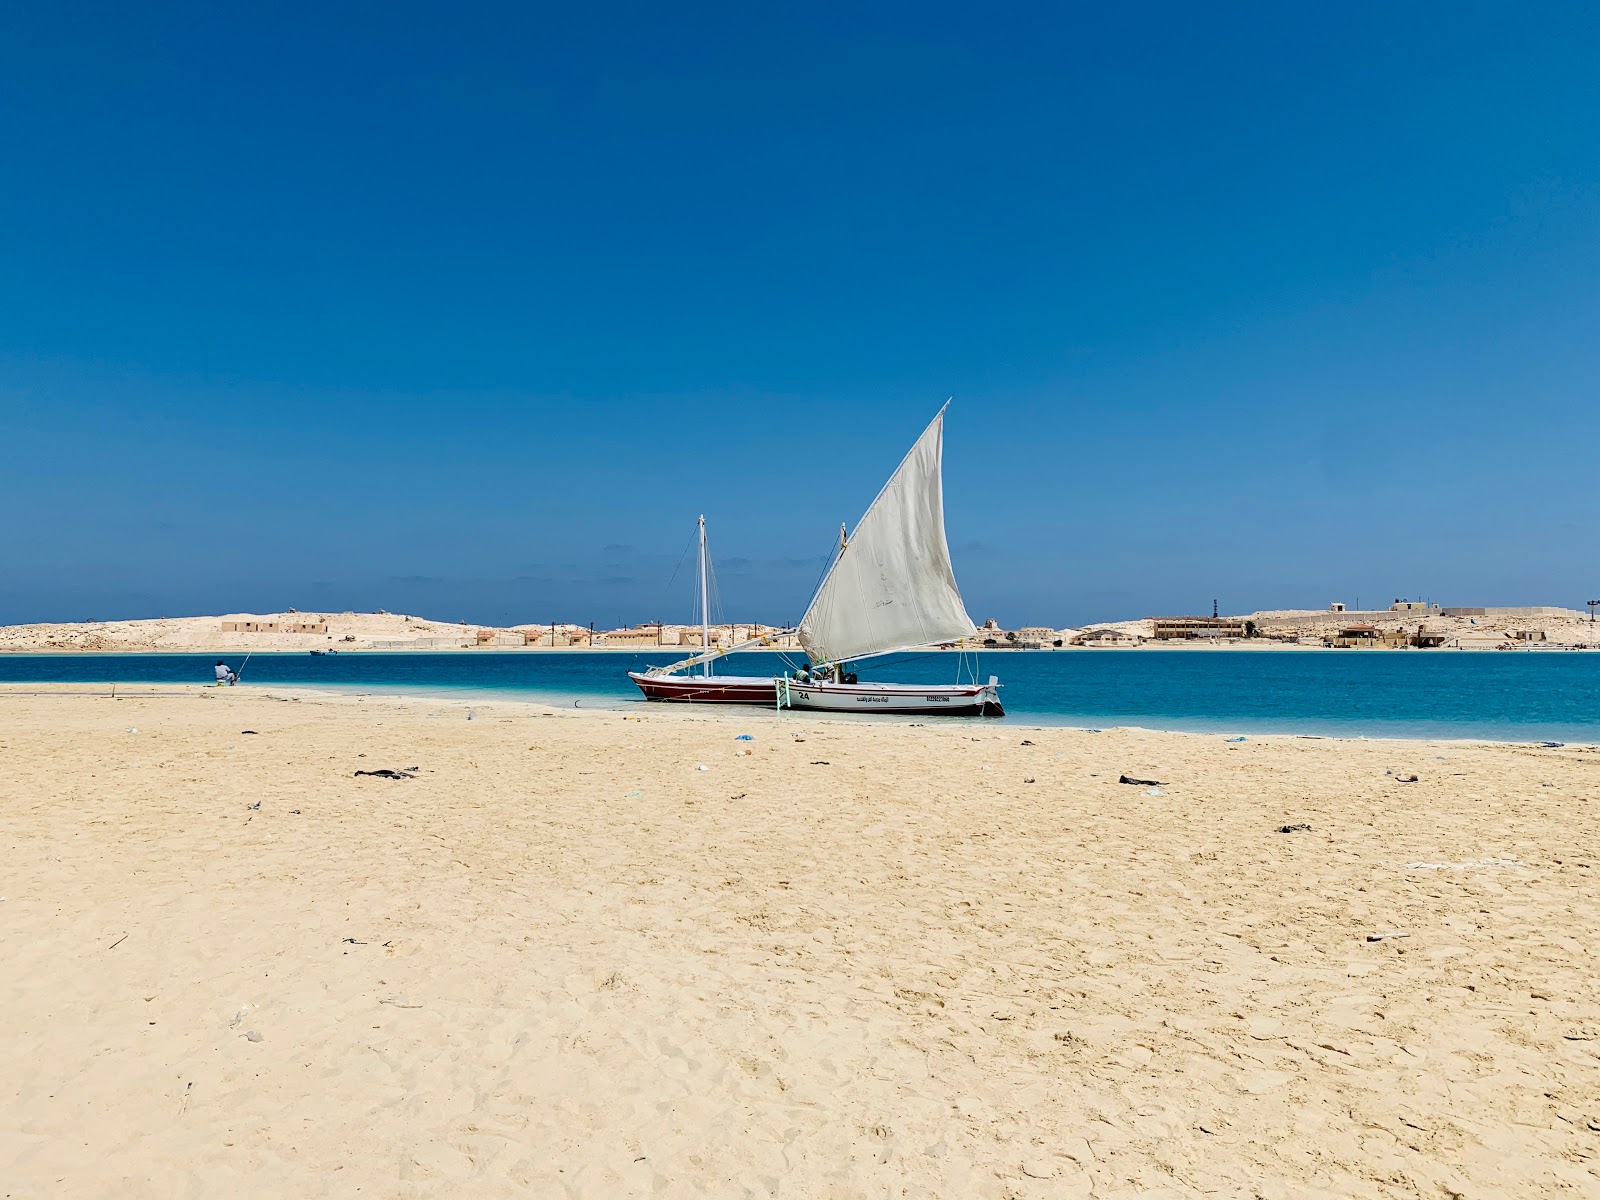 Al Mubarak Beach'in fotoğrafı imkanlar alanı